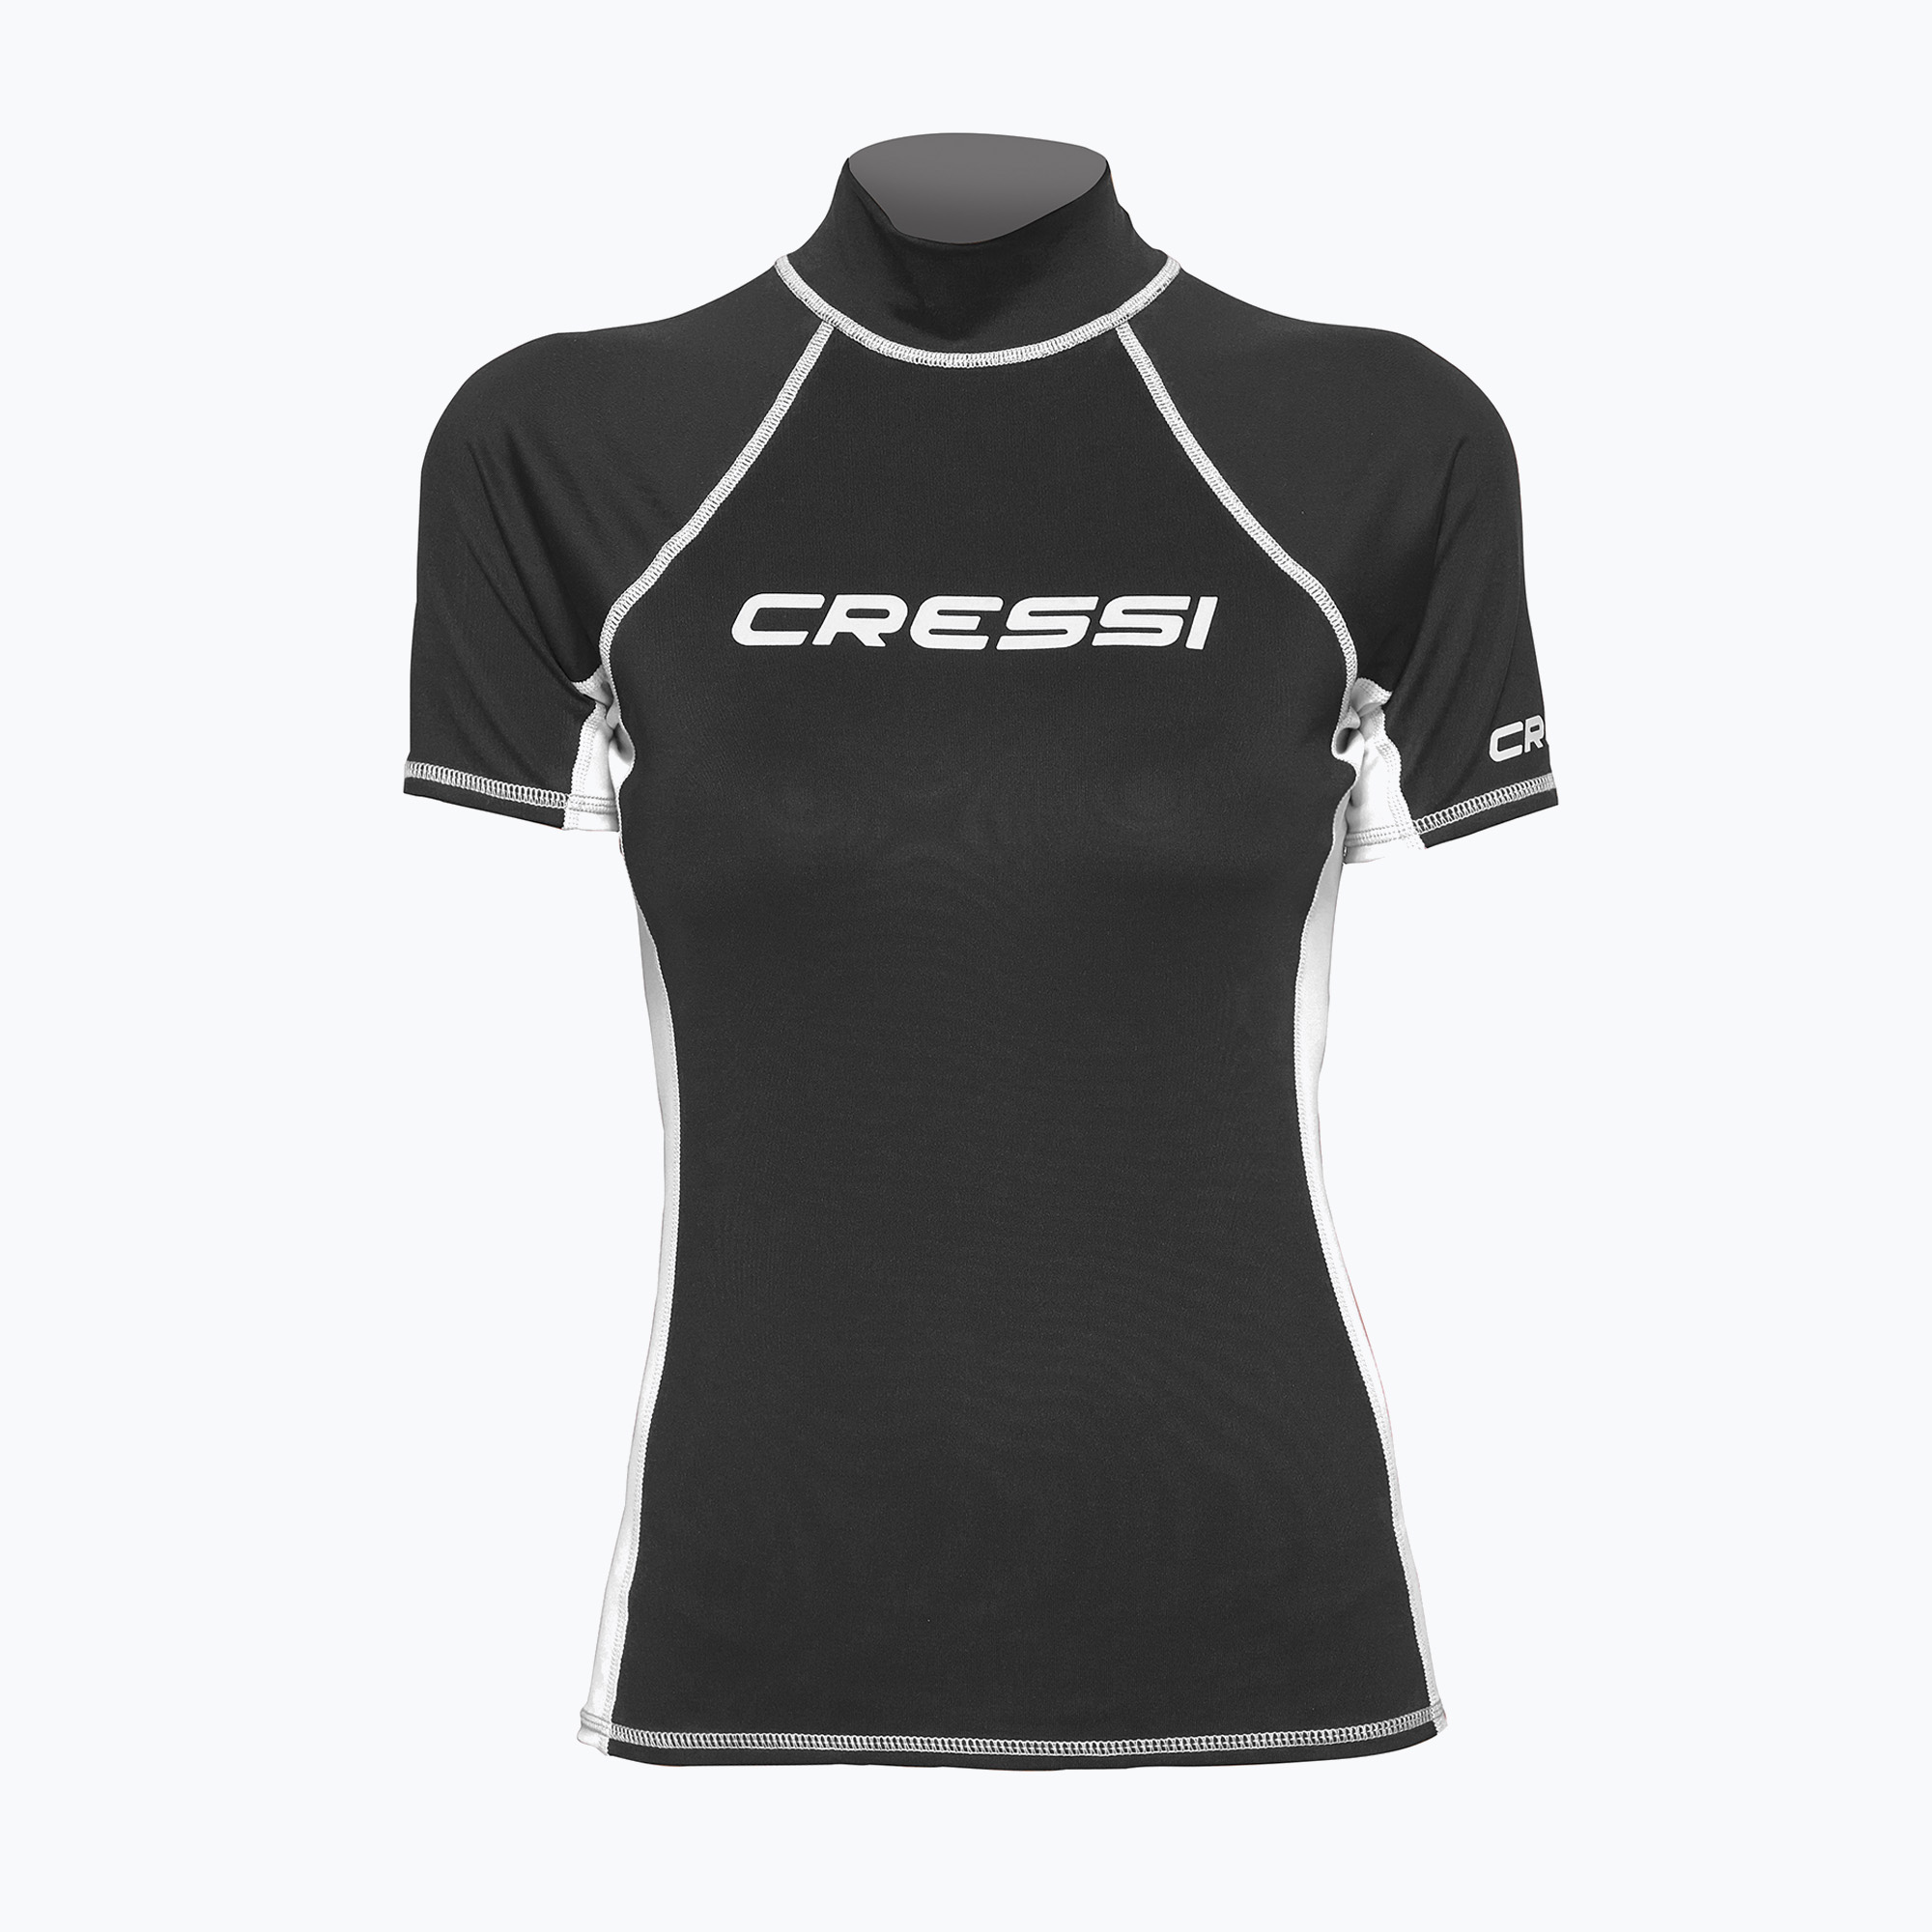 Zdjęcia - Kąpielówki / strój kąpielowy Cressi Sub Koszulka do pływania damska Cressi Rash Guard S/SL black/white | WYSYŁKA W 